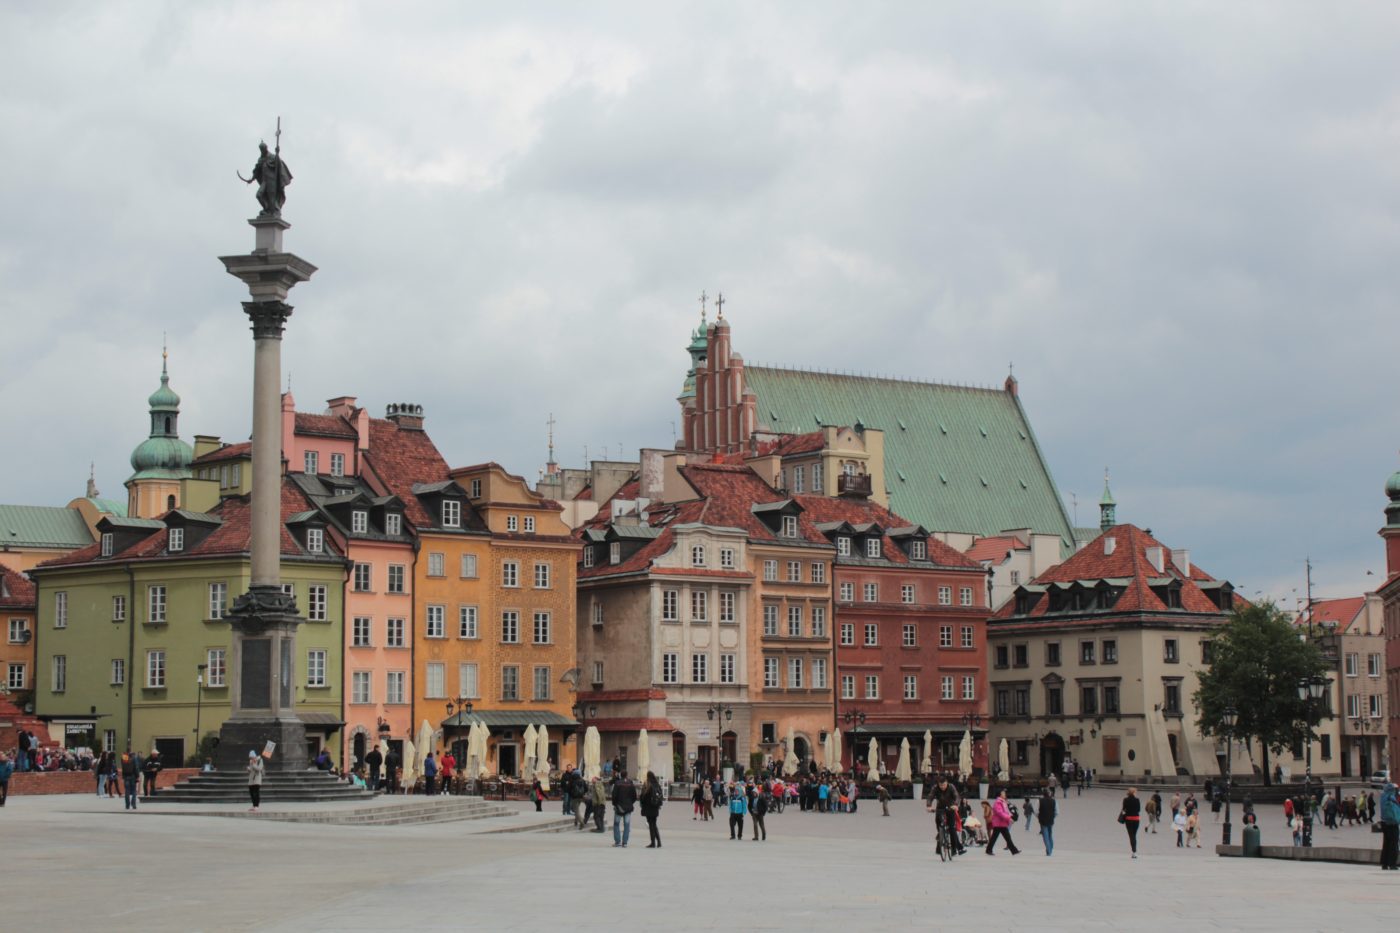 Why I love Eastern Europe: Warsaw